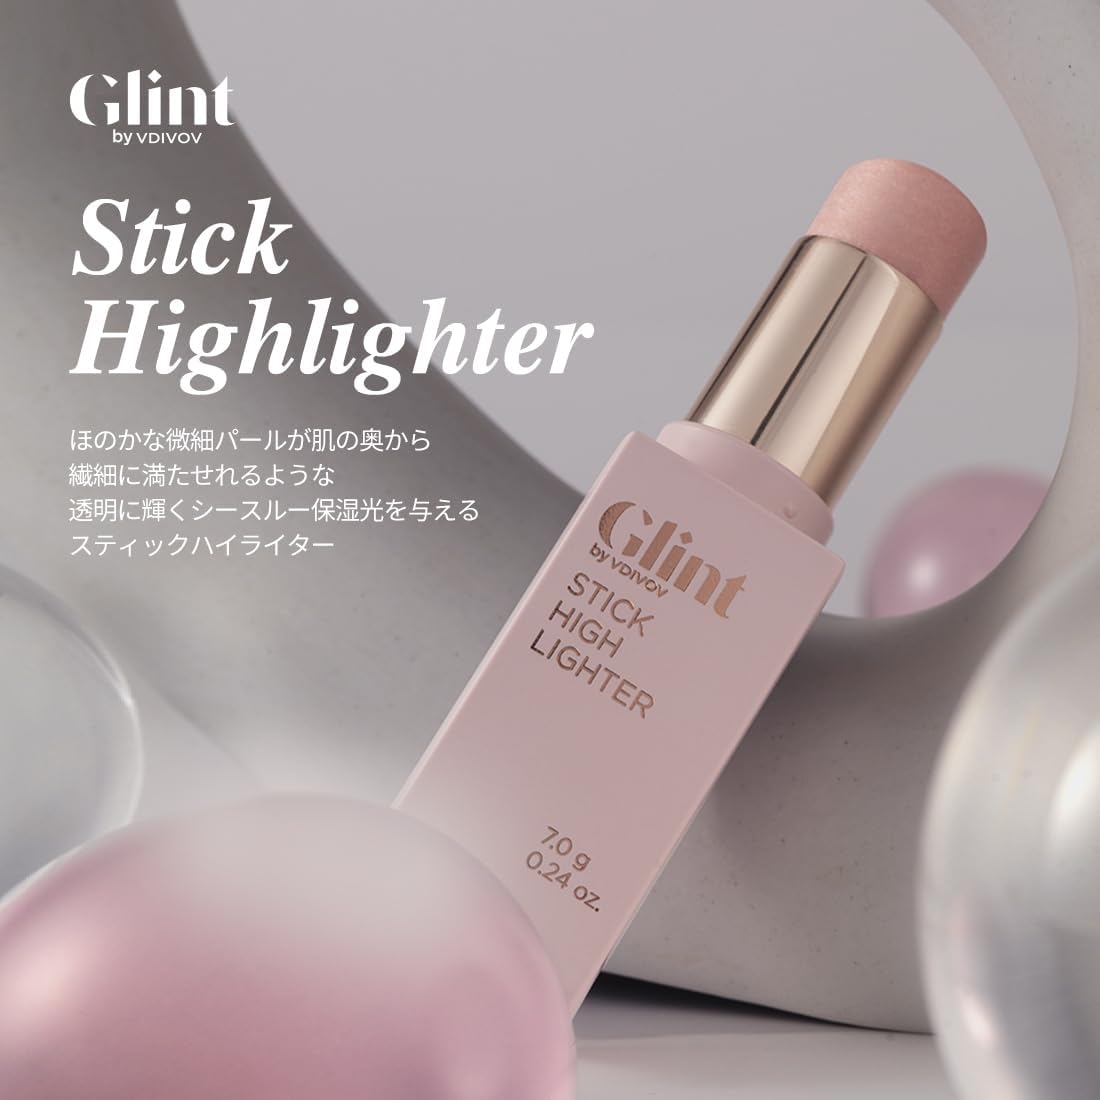 Glint(グリント) スティックハイライターの商品画像2 